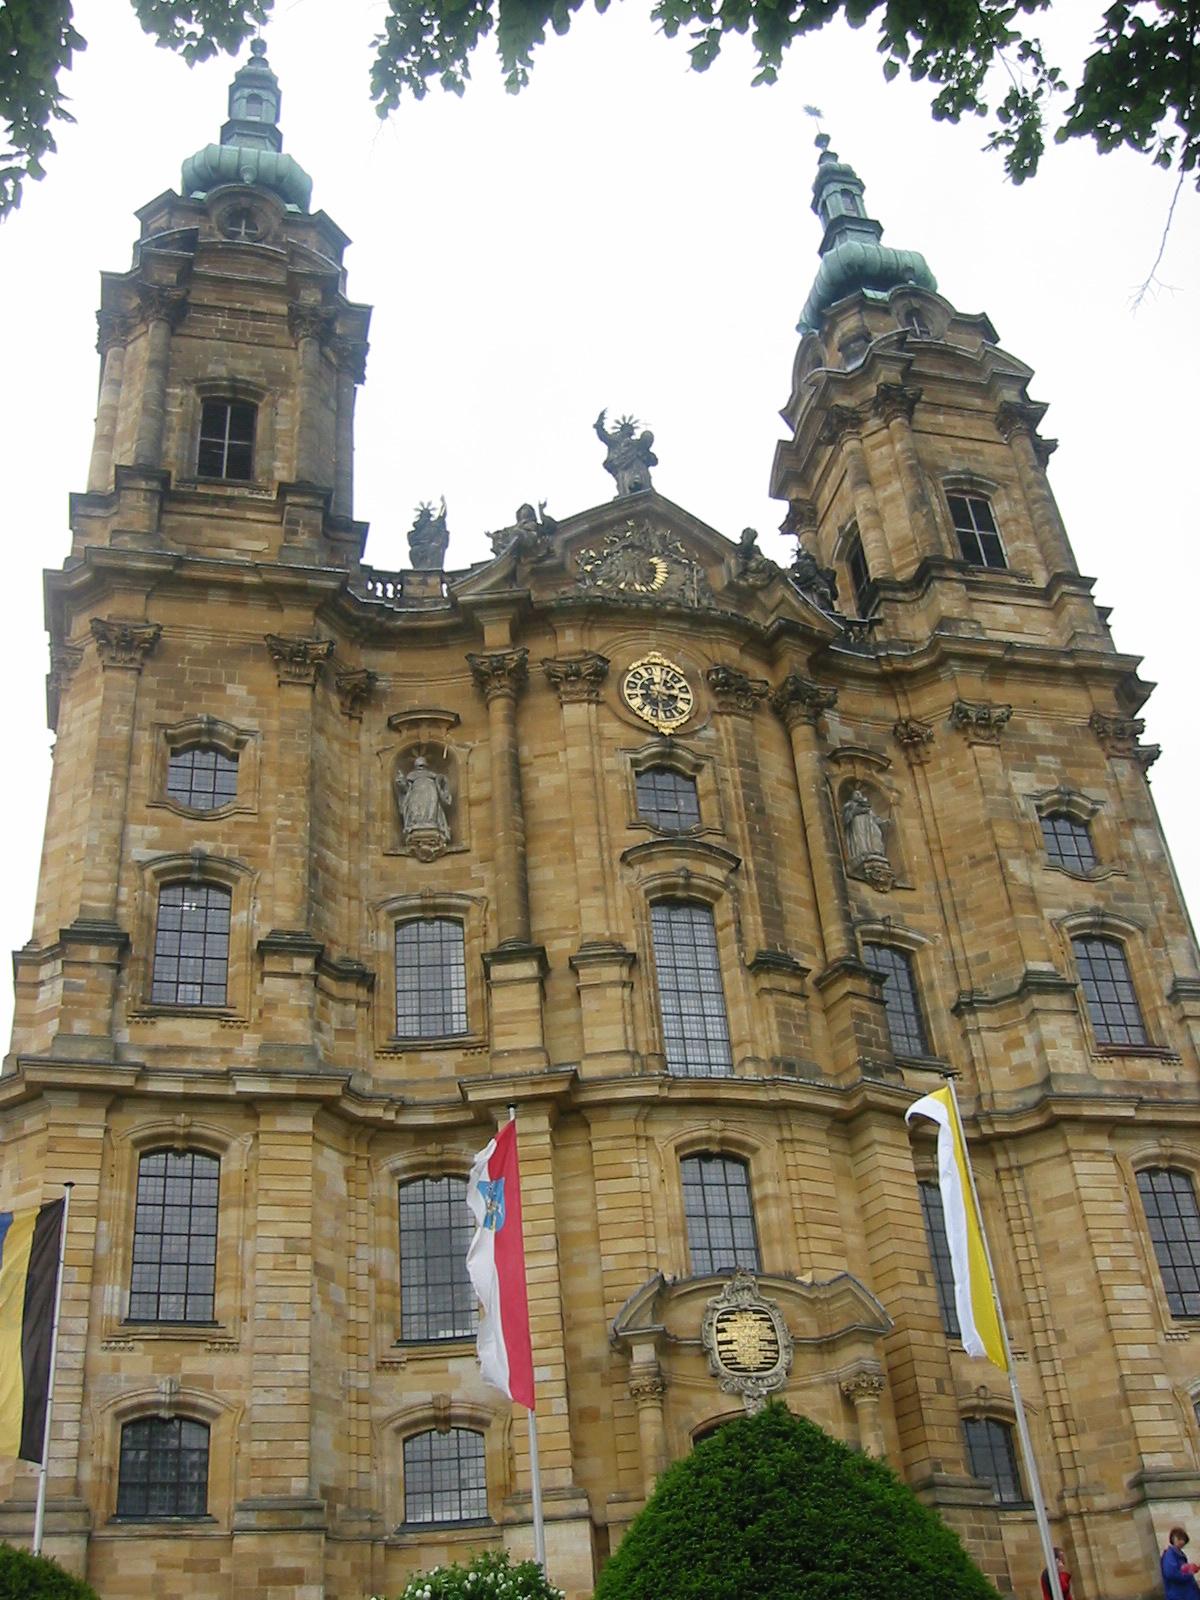 Basilika Vierzehnheiligen bei Bad Staffelstein